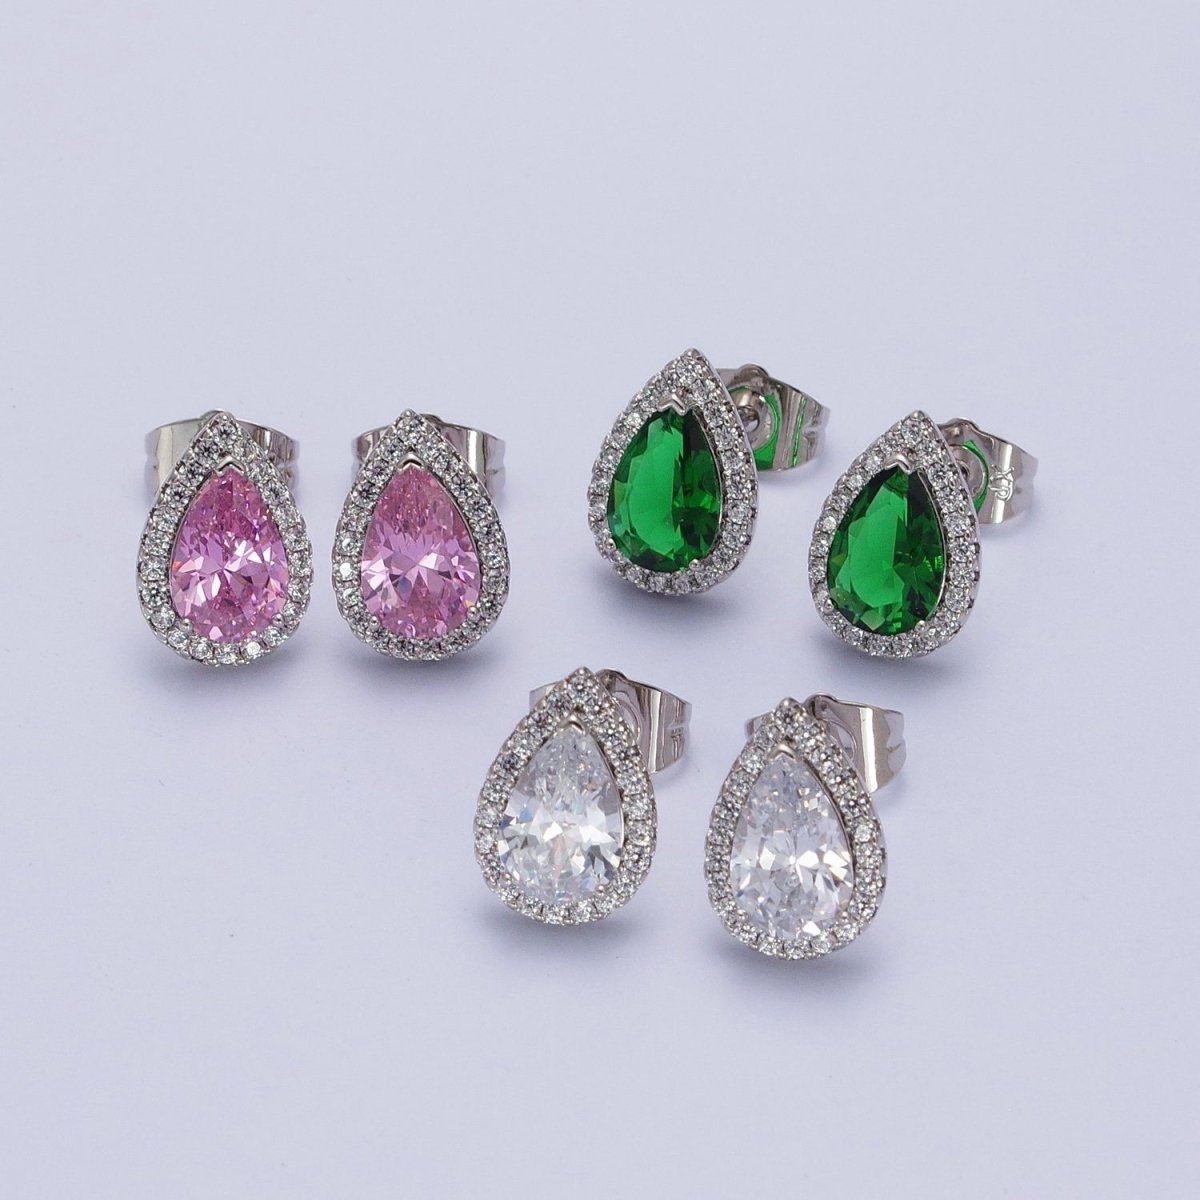 Teardrop Pave Earrings, Pave Halo Stud Earrings, Cubic Zirconia Stone Studs, Silver CZ Diamond Earrings Y-003 Y-004 - DLUXCA